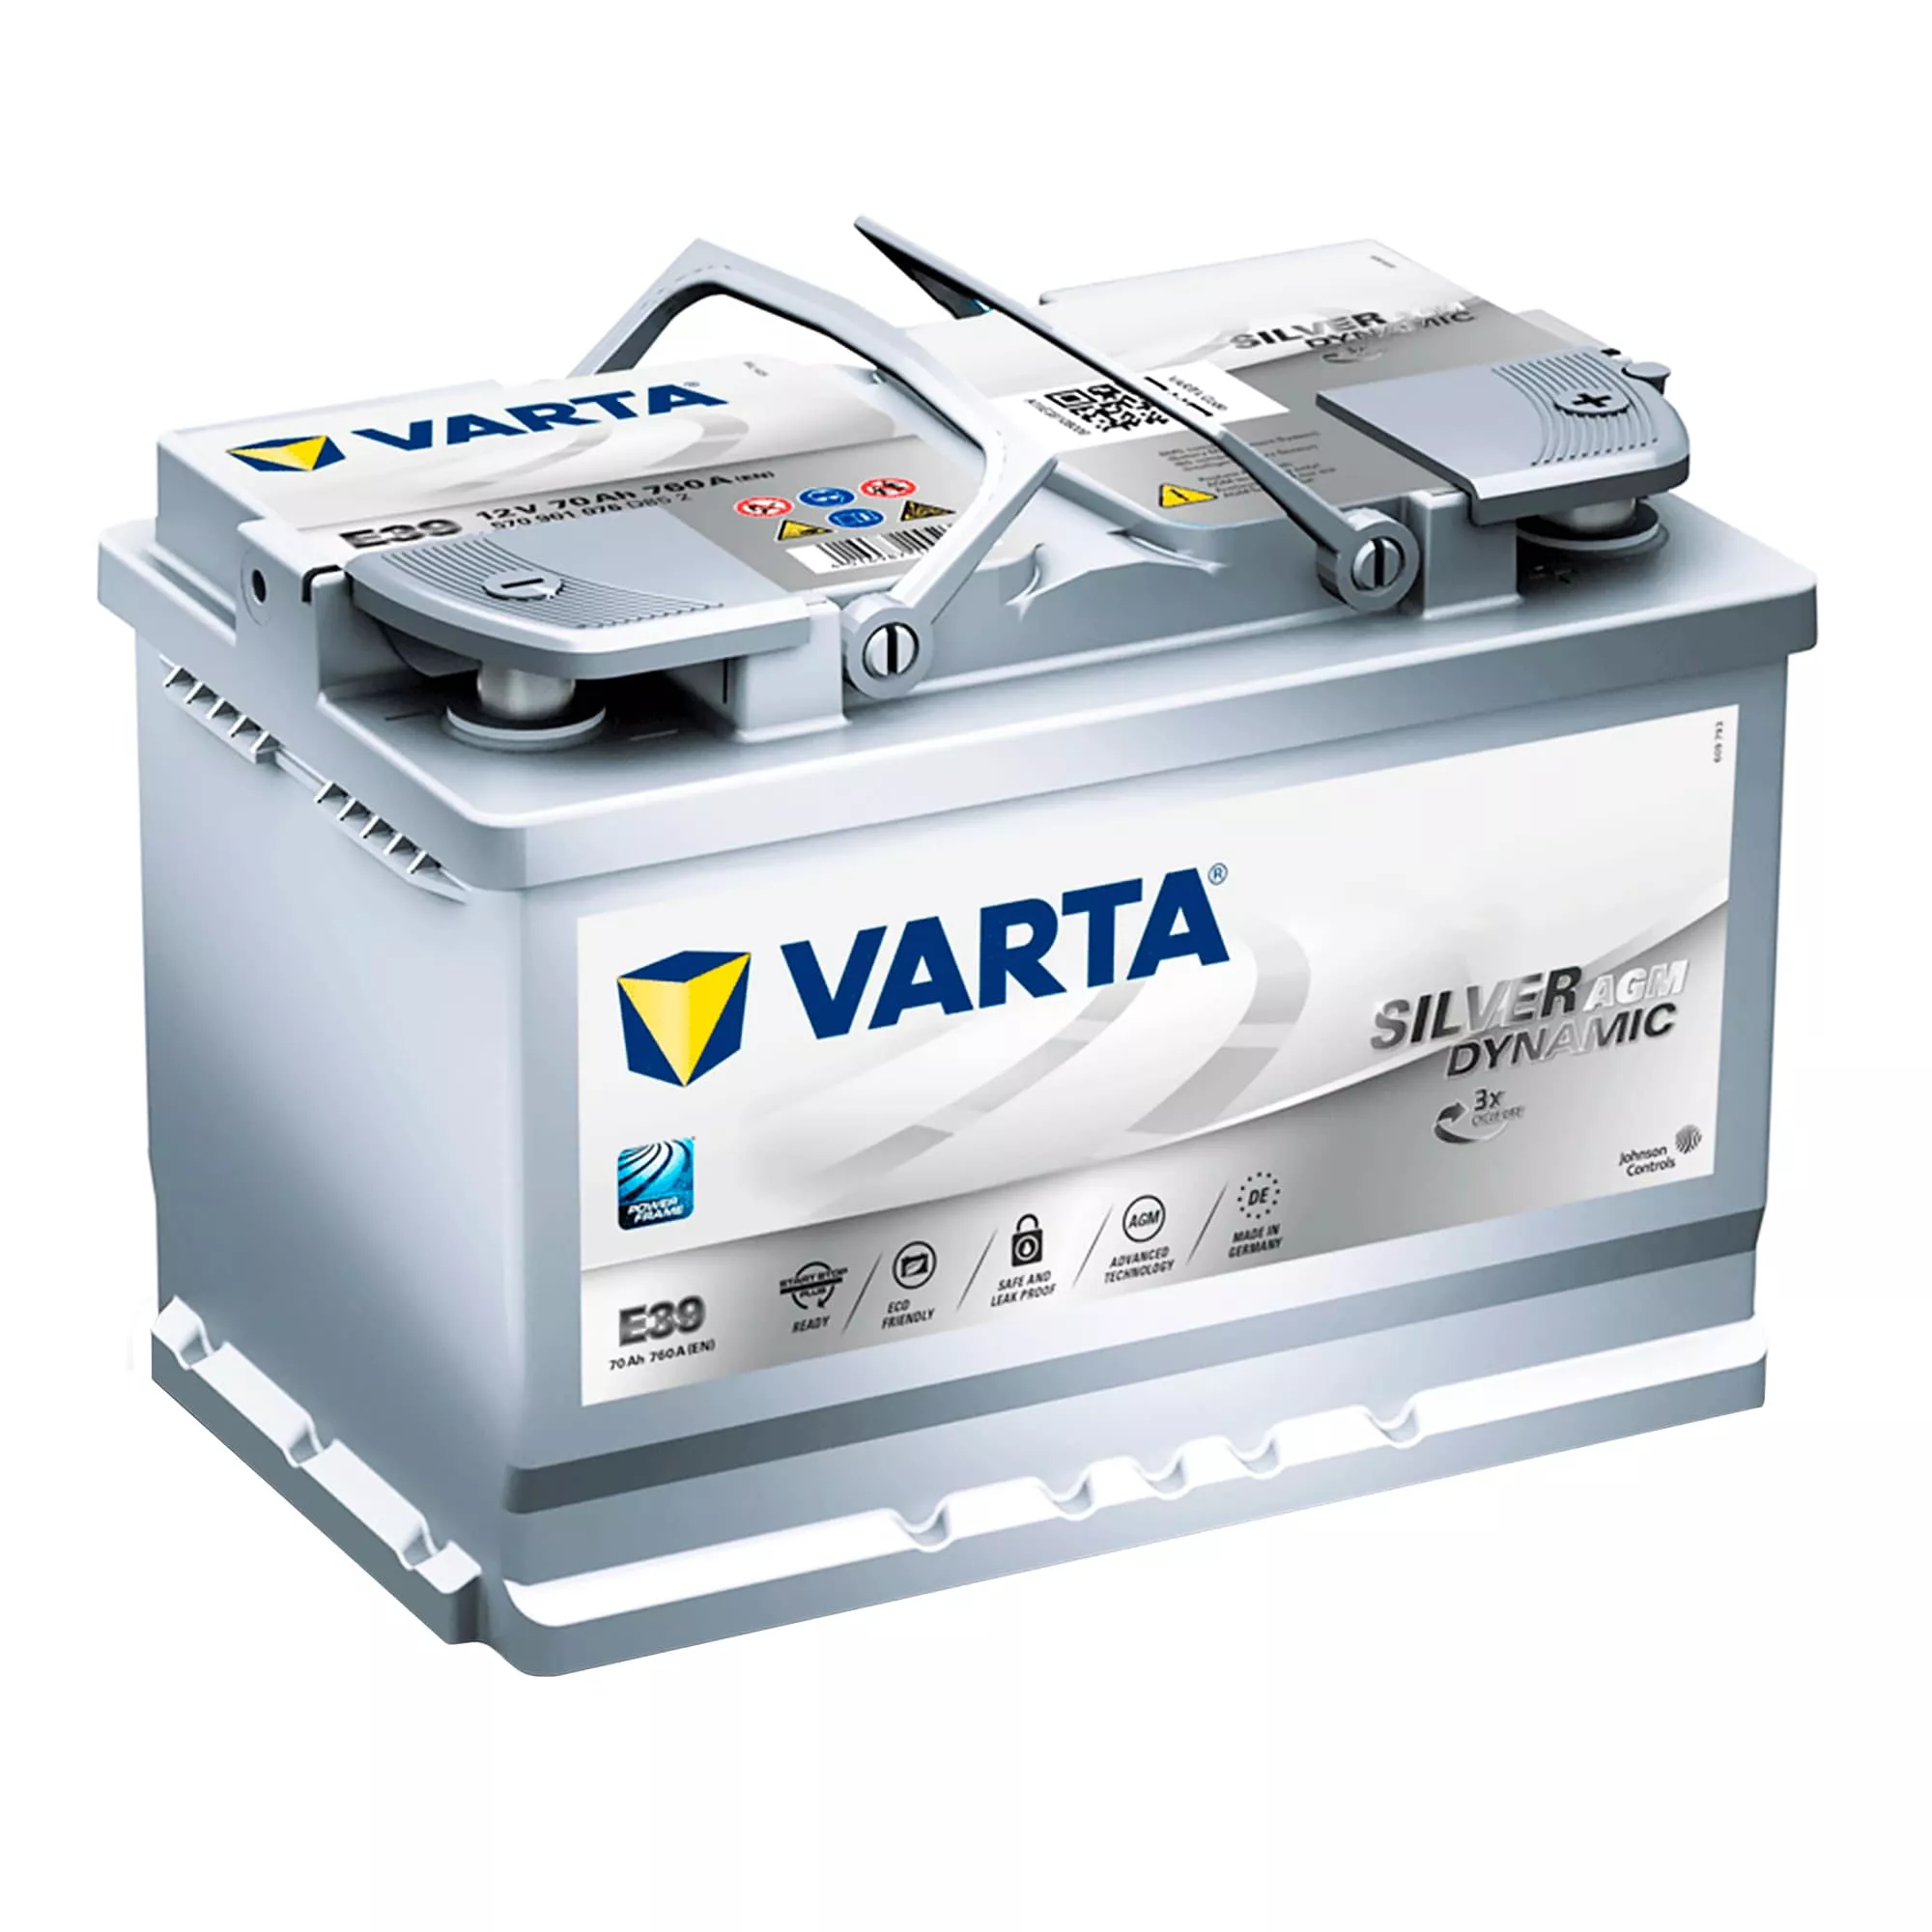 Автомобильные аккумуляторы Varta и Bosch (расшифровка кодов)